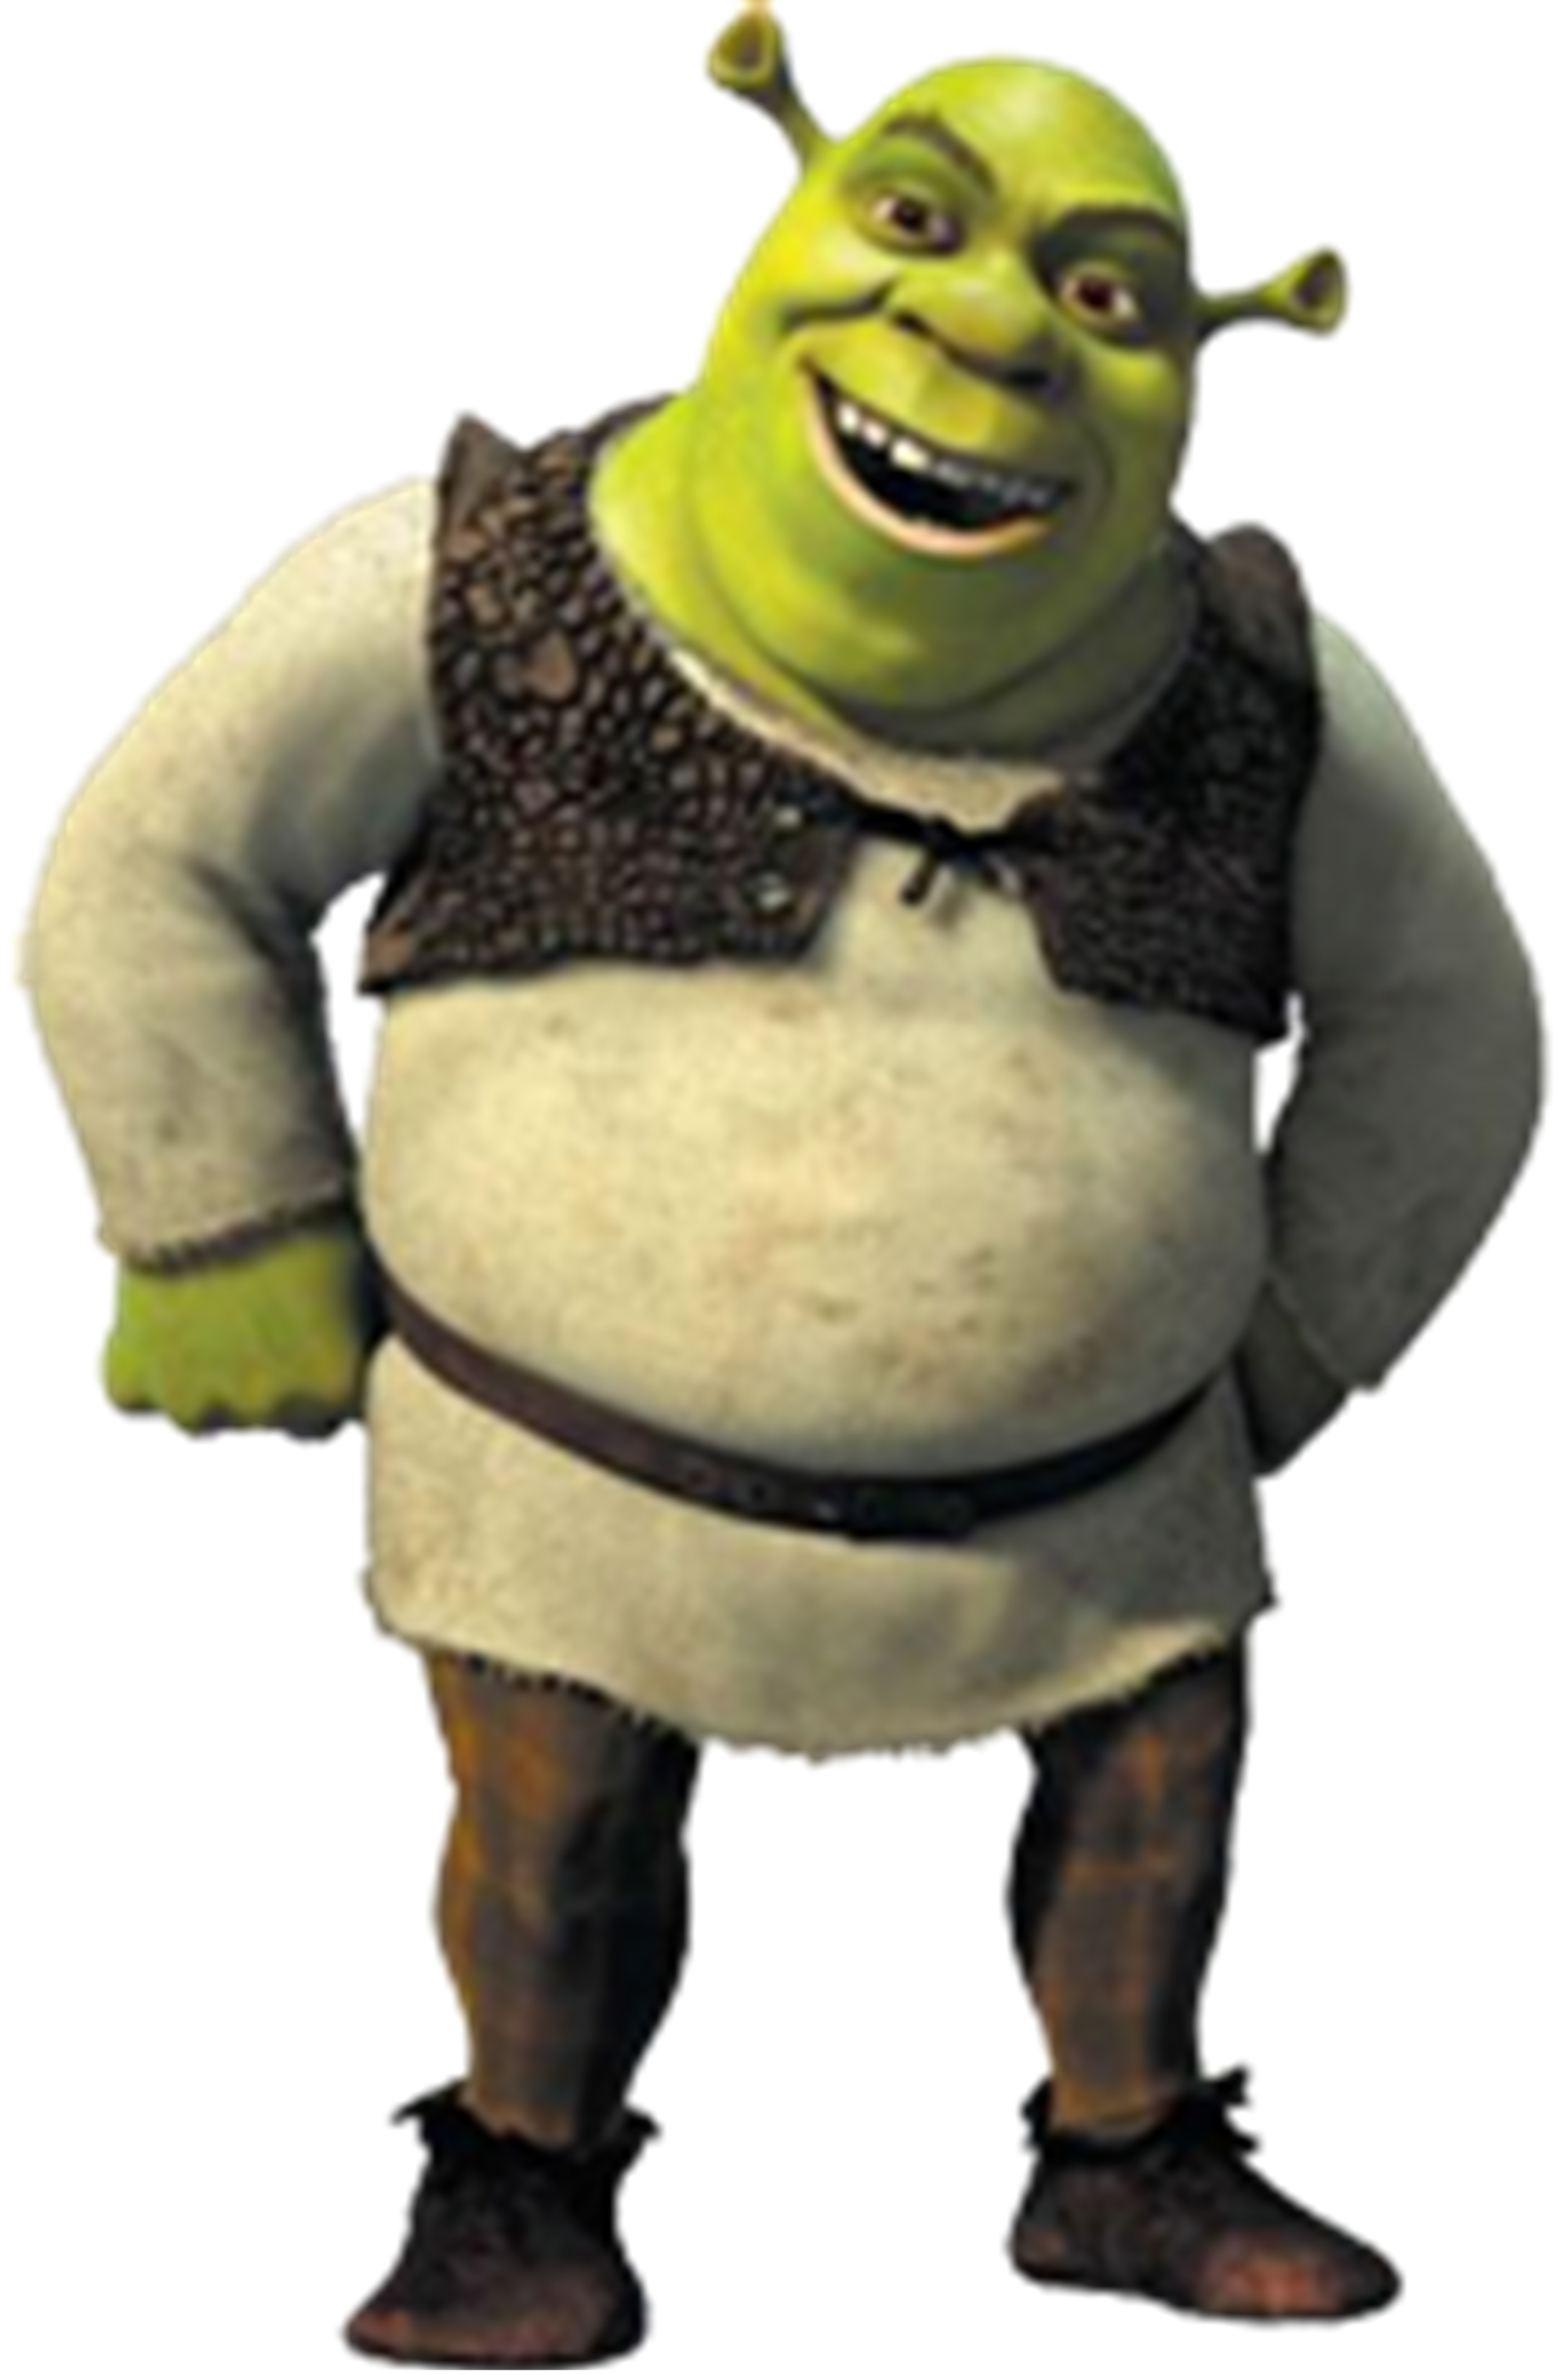 Shrek Free PNG Image